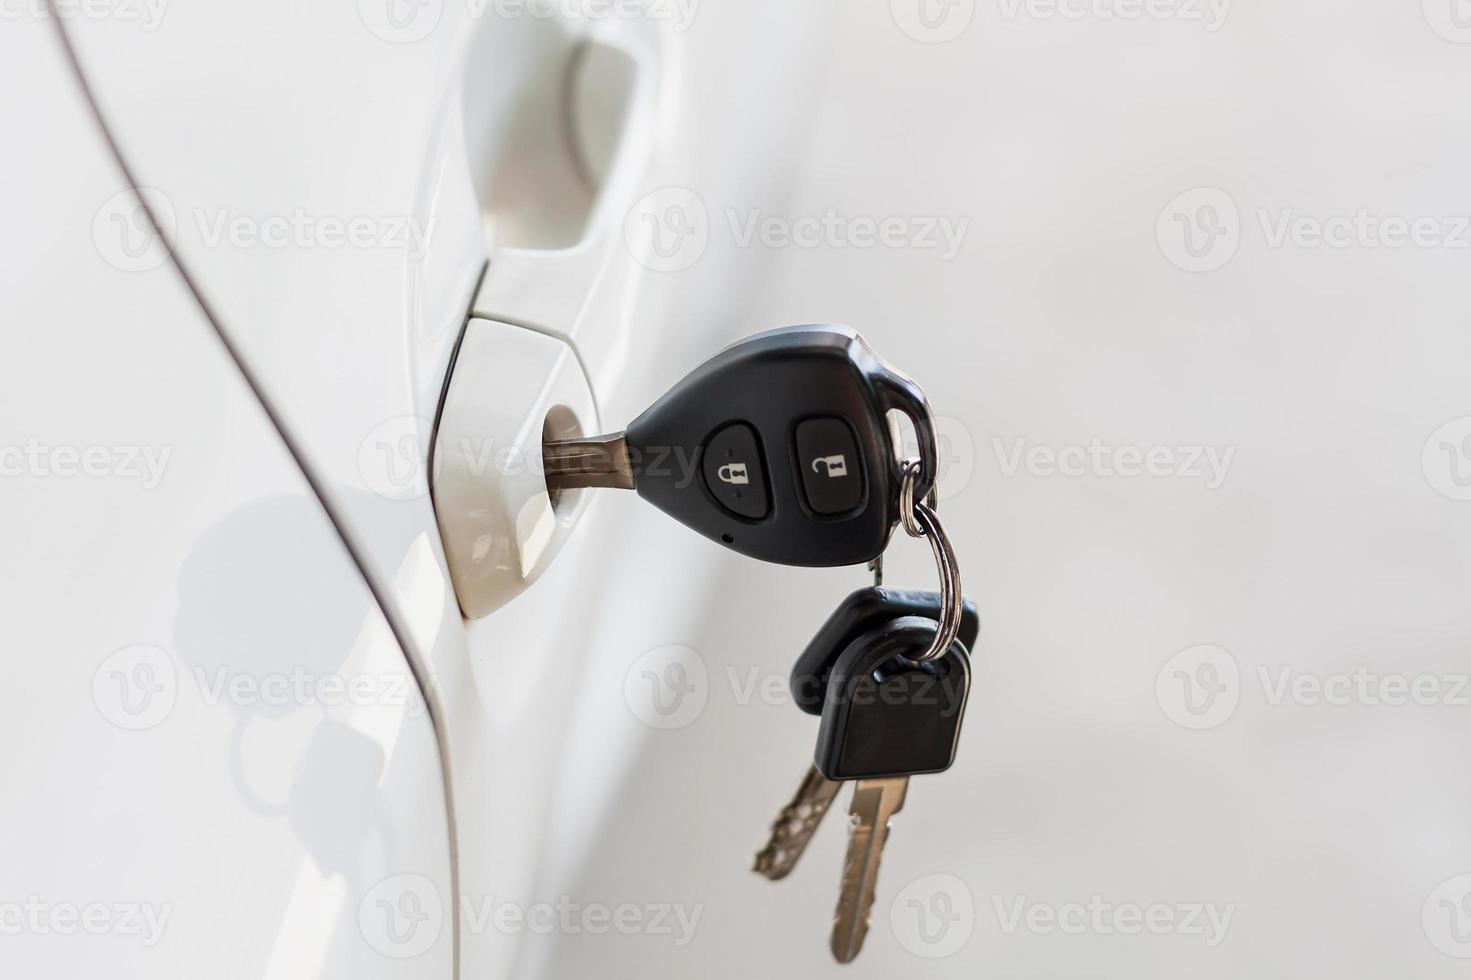 llaves del auto dejadas en la puerta del auto foto